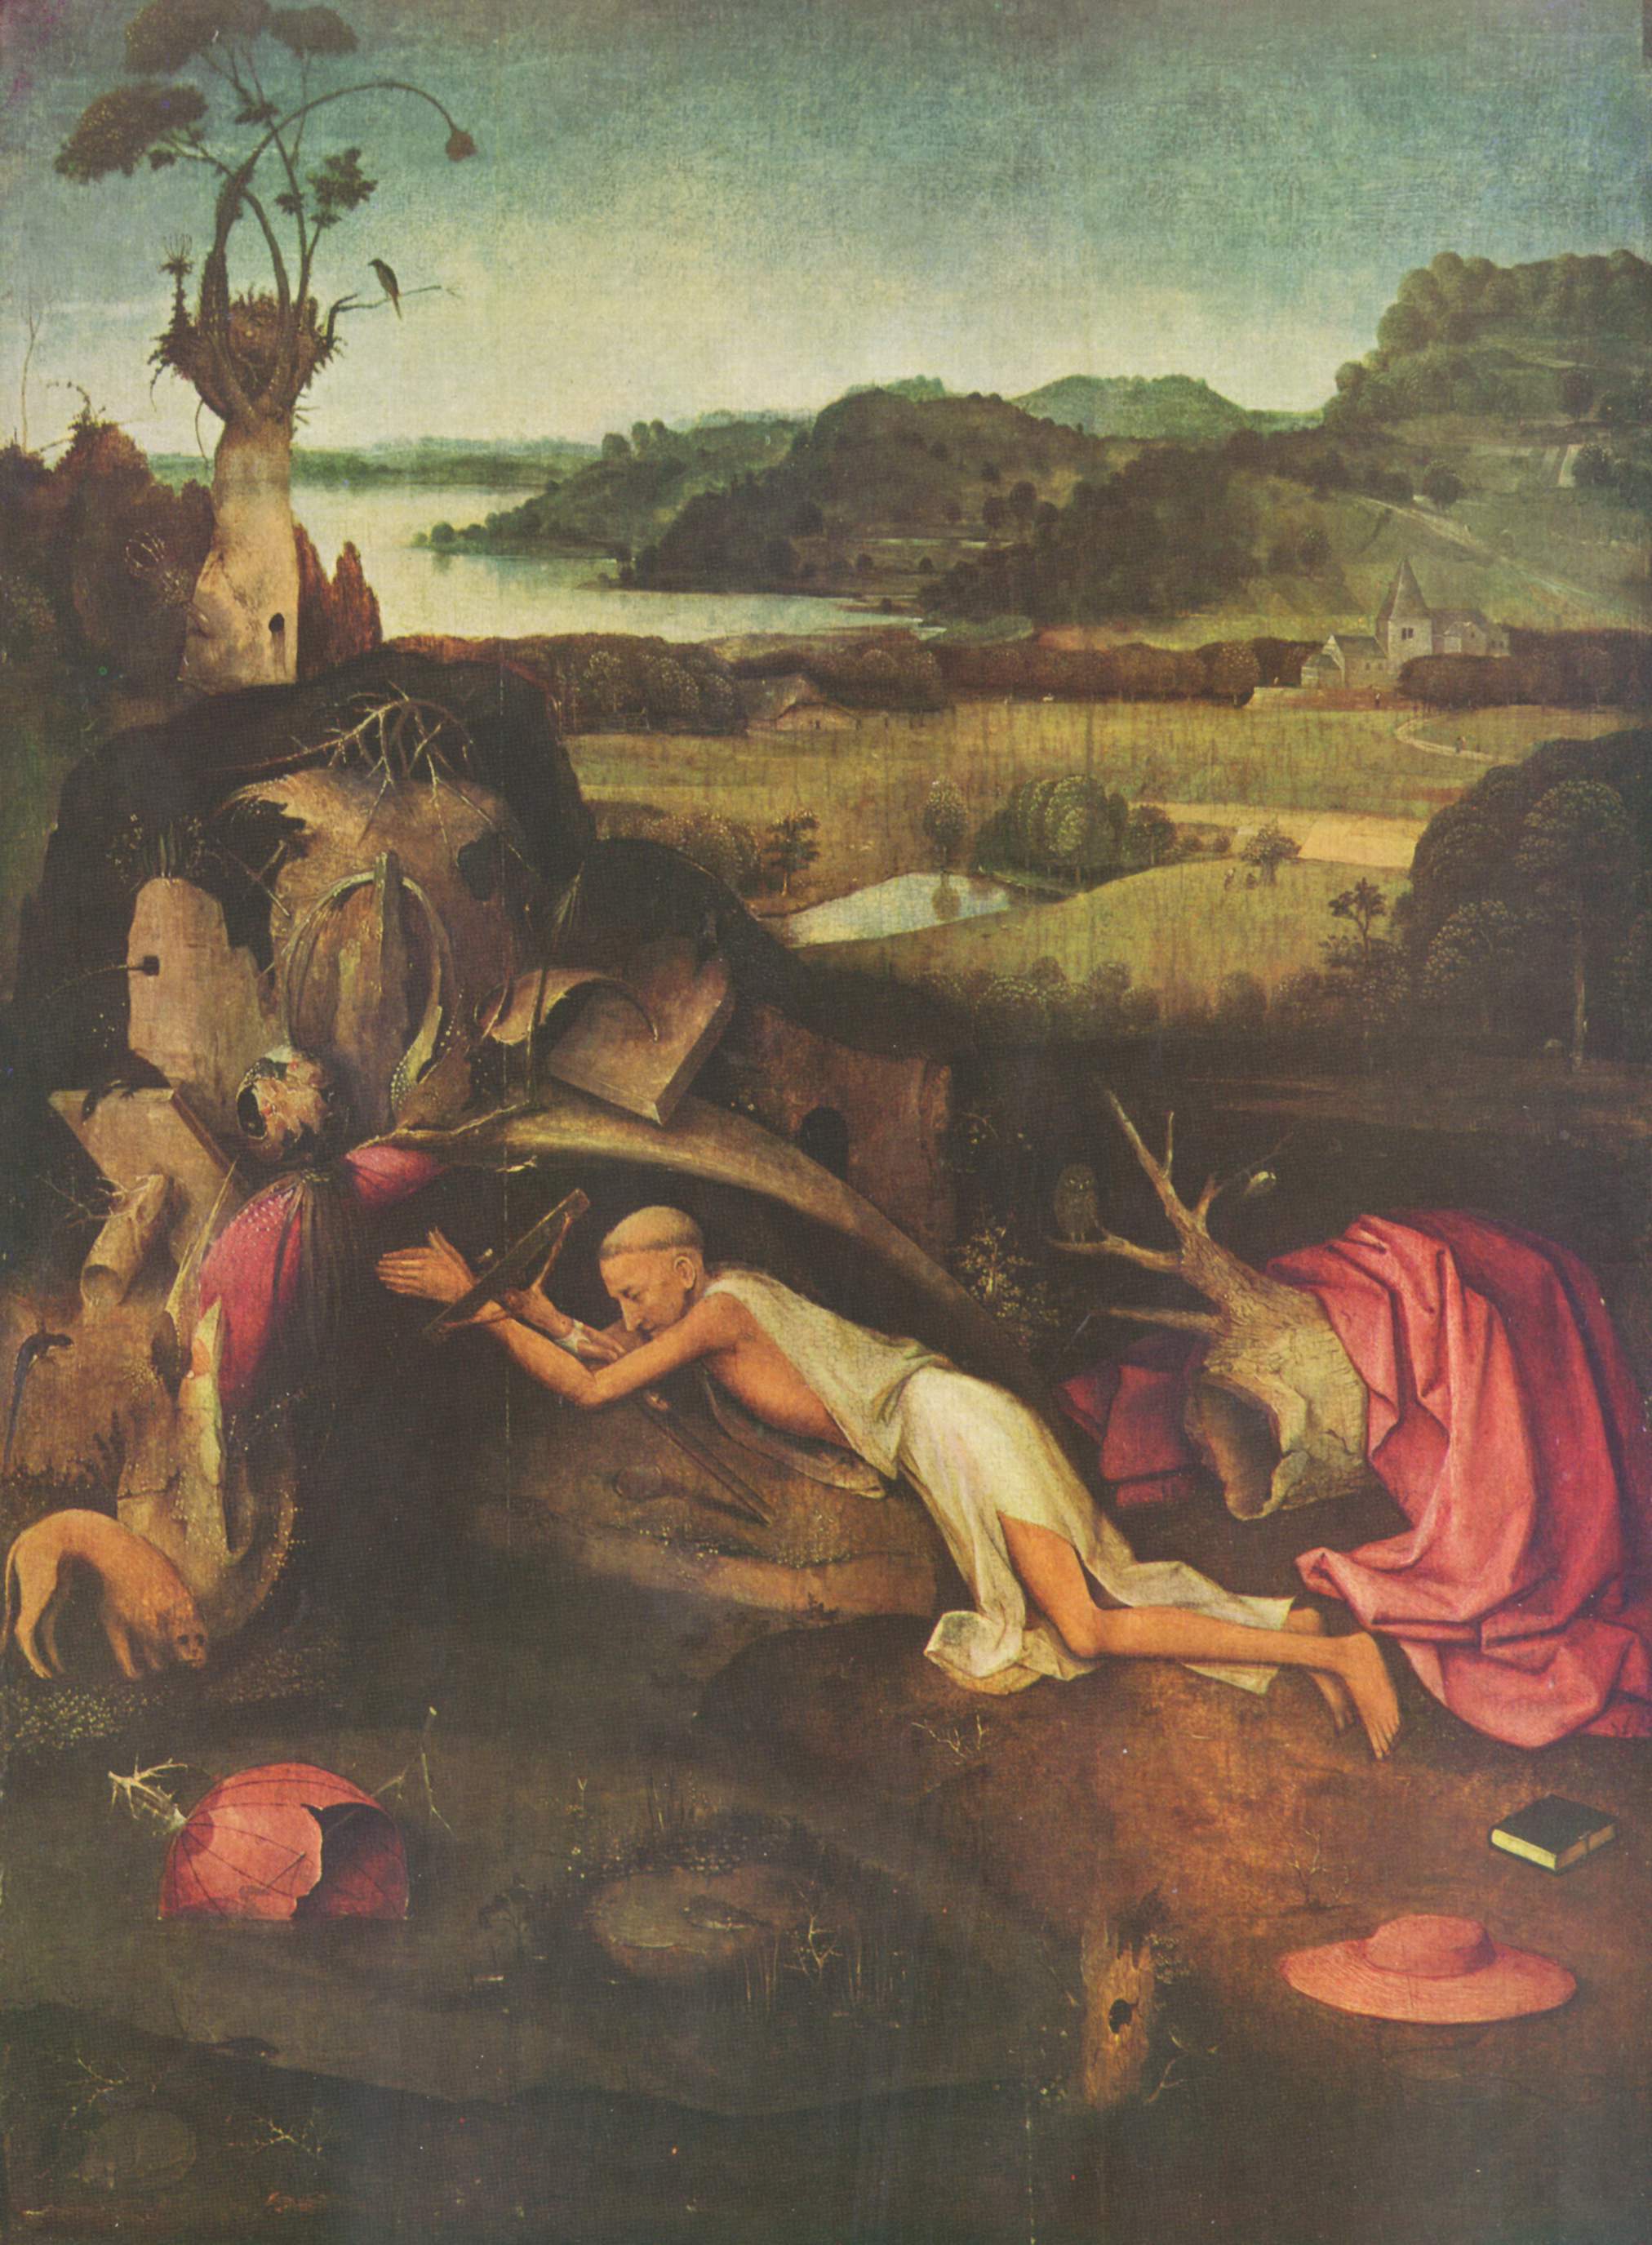 St. Jerome Praying, 1476 - 1500 - Hieronymus Bosch ...